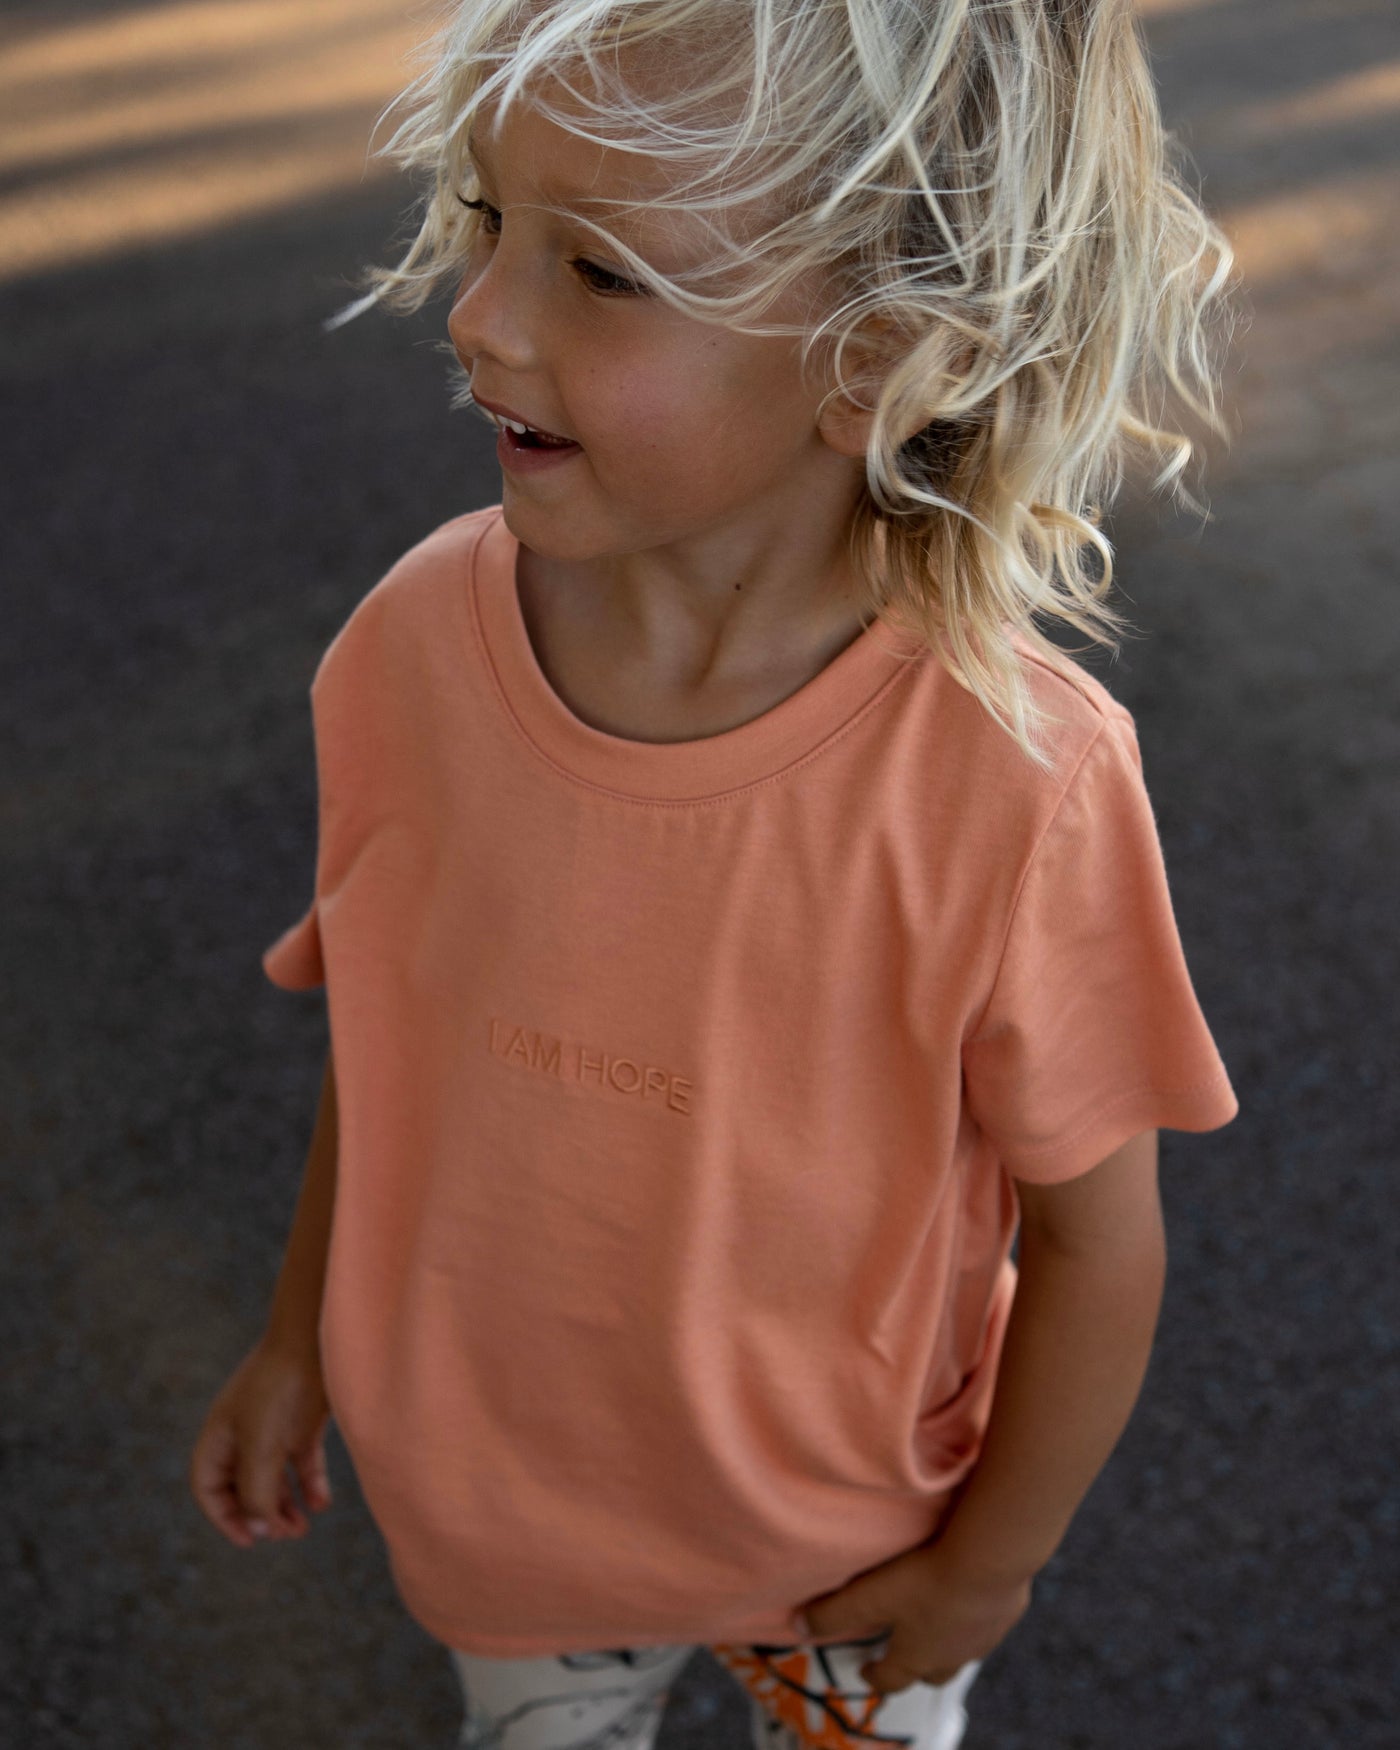 HOPE T-Shirt Kids (orange)